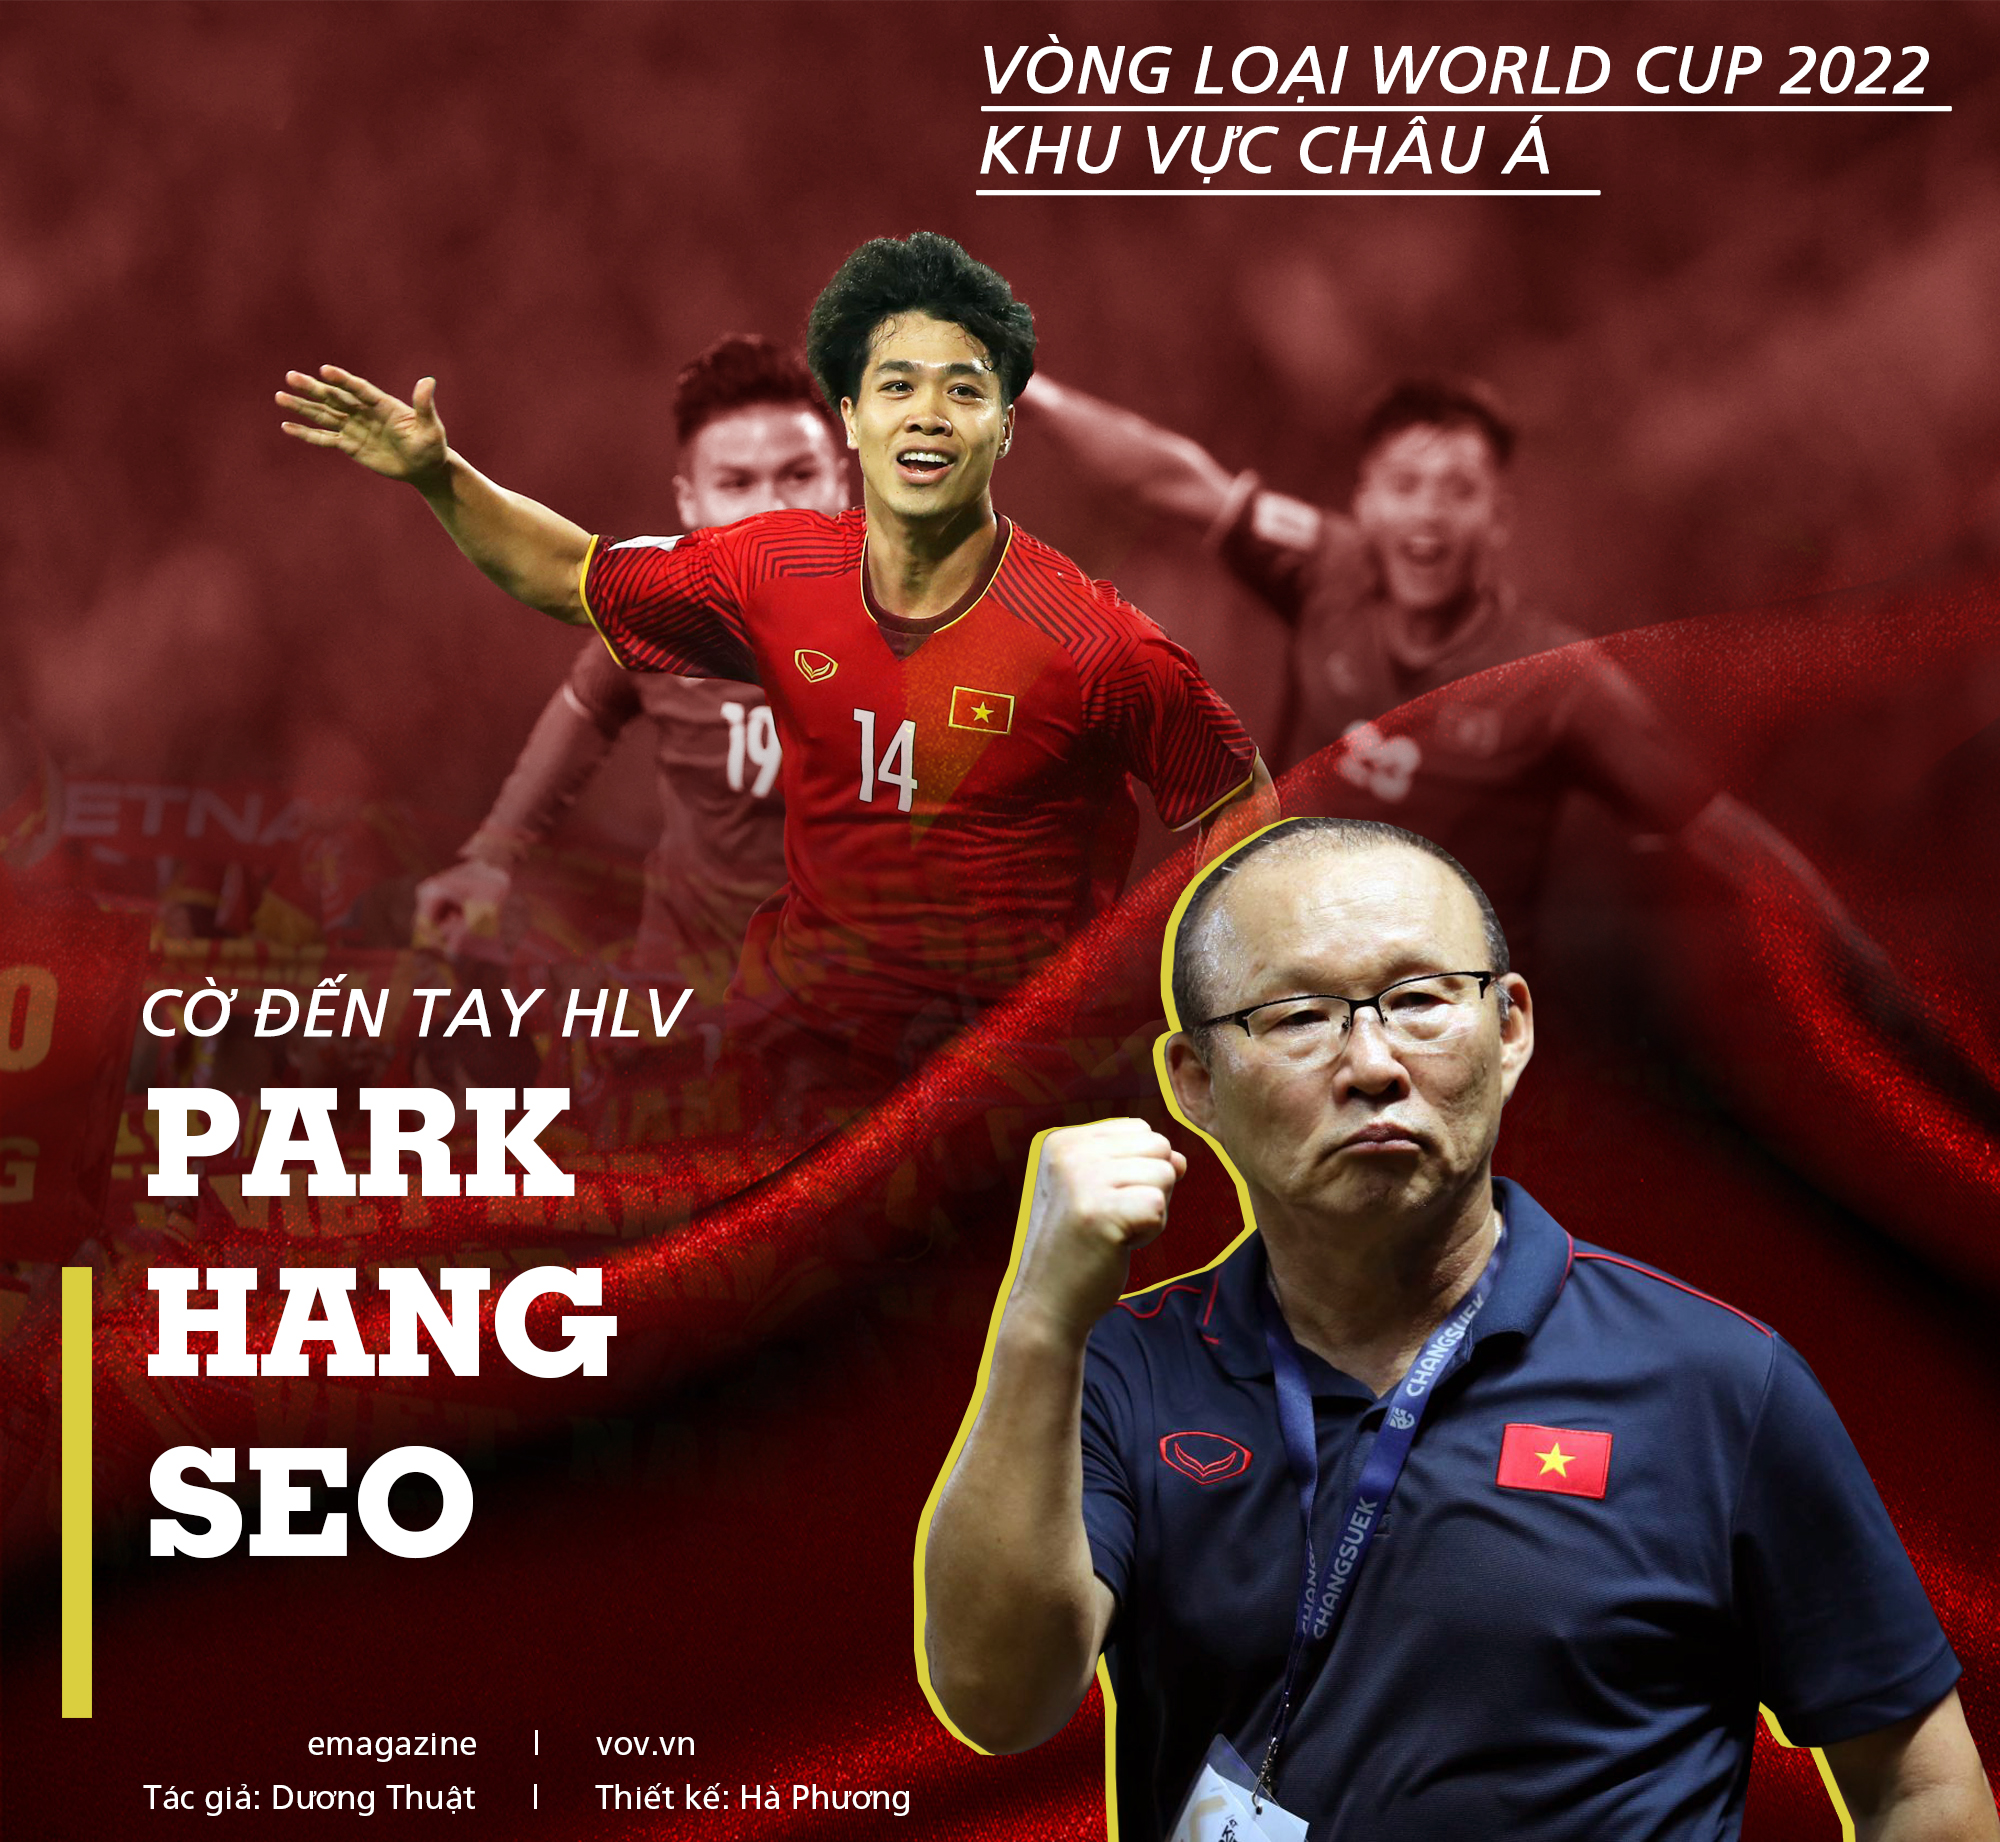 HLV Park Hang: Xin chào tất cả các bạn đến với trang hình ảnh của HLV Park Hang-seo - một vị HLV nổi tiếng của bóng đá Việt Nam. Nơi đây, chúng ta sẽ được chứng kiến những khoảnh khắc đầy cảm xúc khi HLV Park dẫn dắt đội tuyển quốc gia Việt Nam giành được những chiến thắng quan trọng. Cùng theo dõi các hình ảnh đầy sáng tạo và khám phá những bí mật của HLV Park nhé!